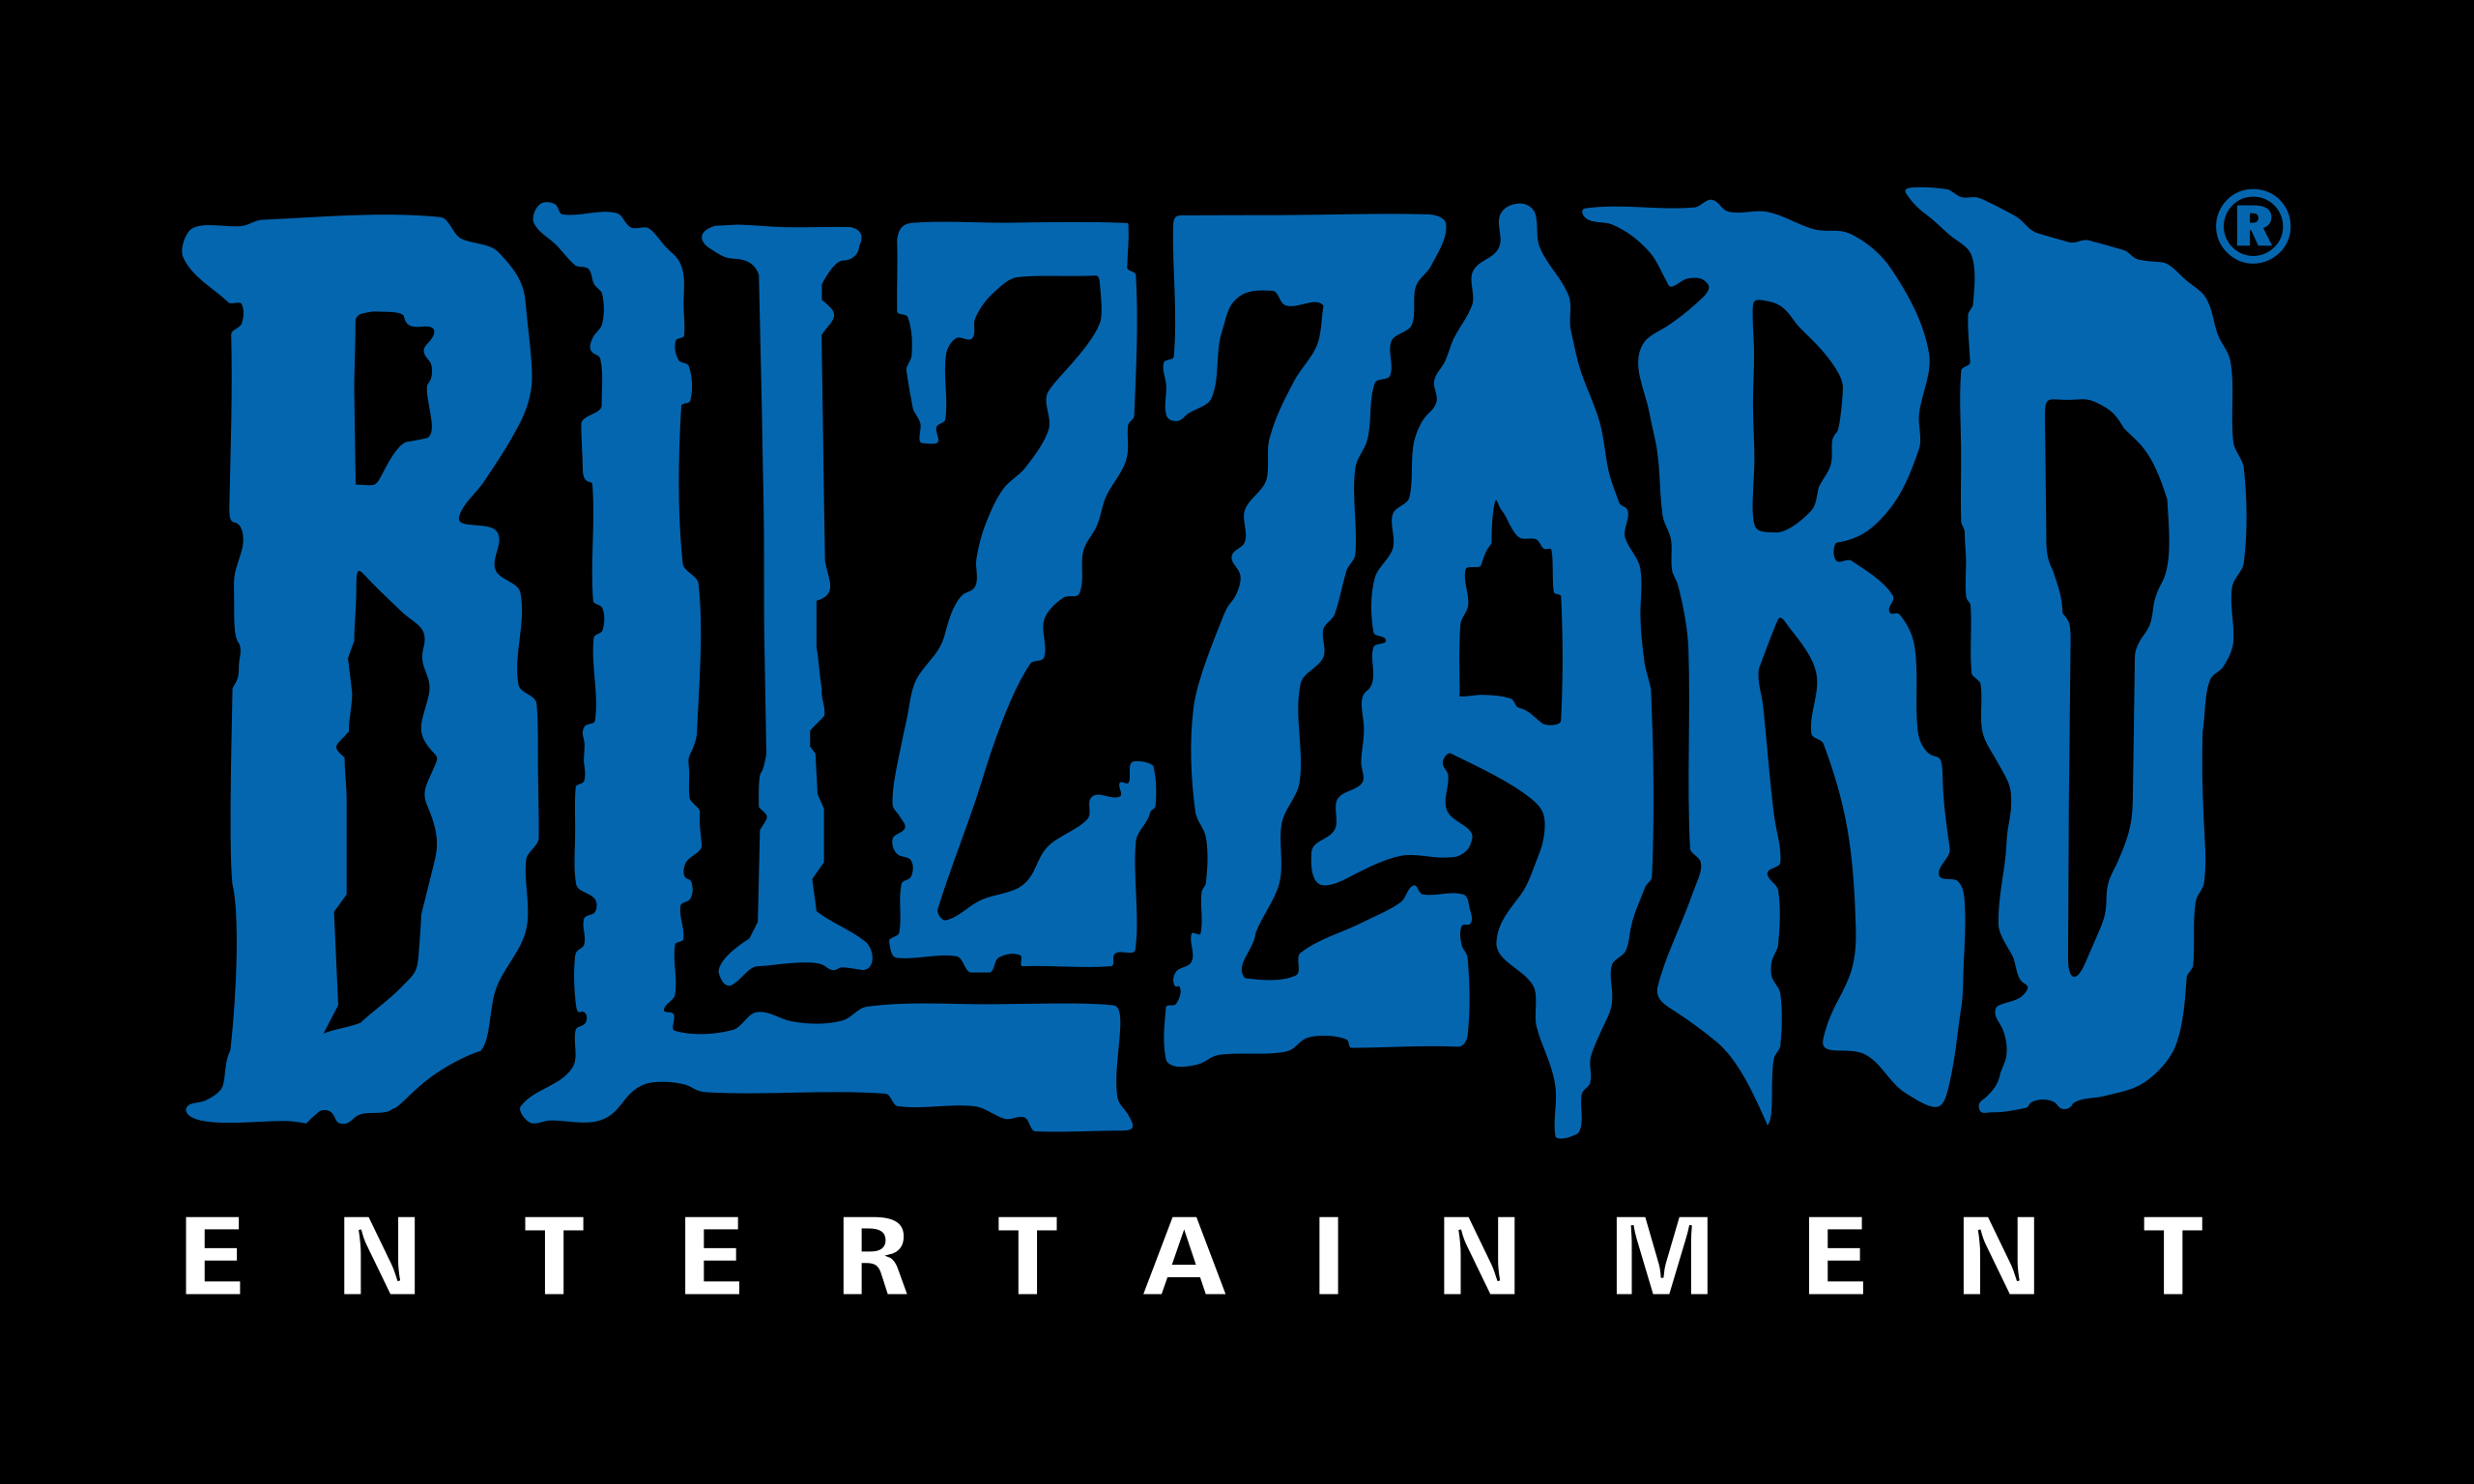 Blizzard більше не називатиме персонажів іменами реальних людей!